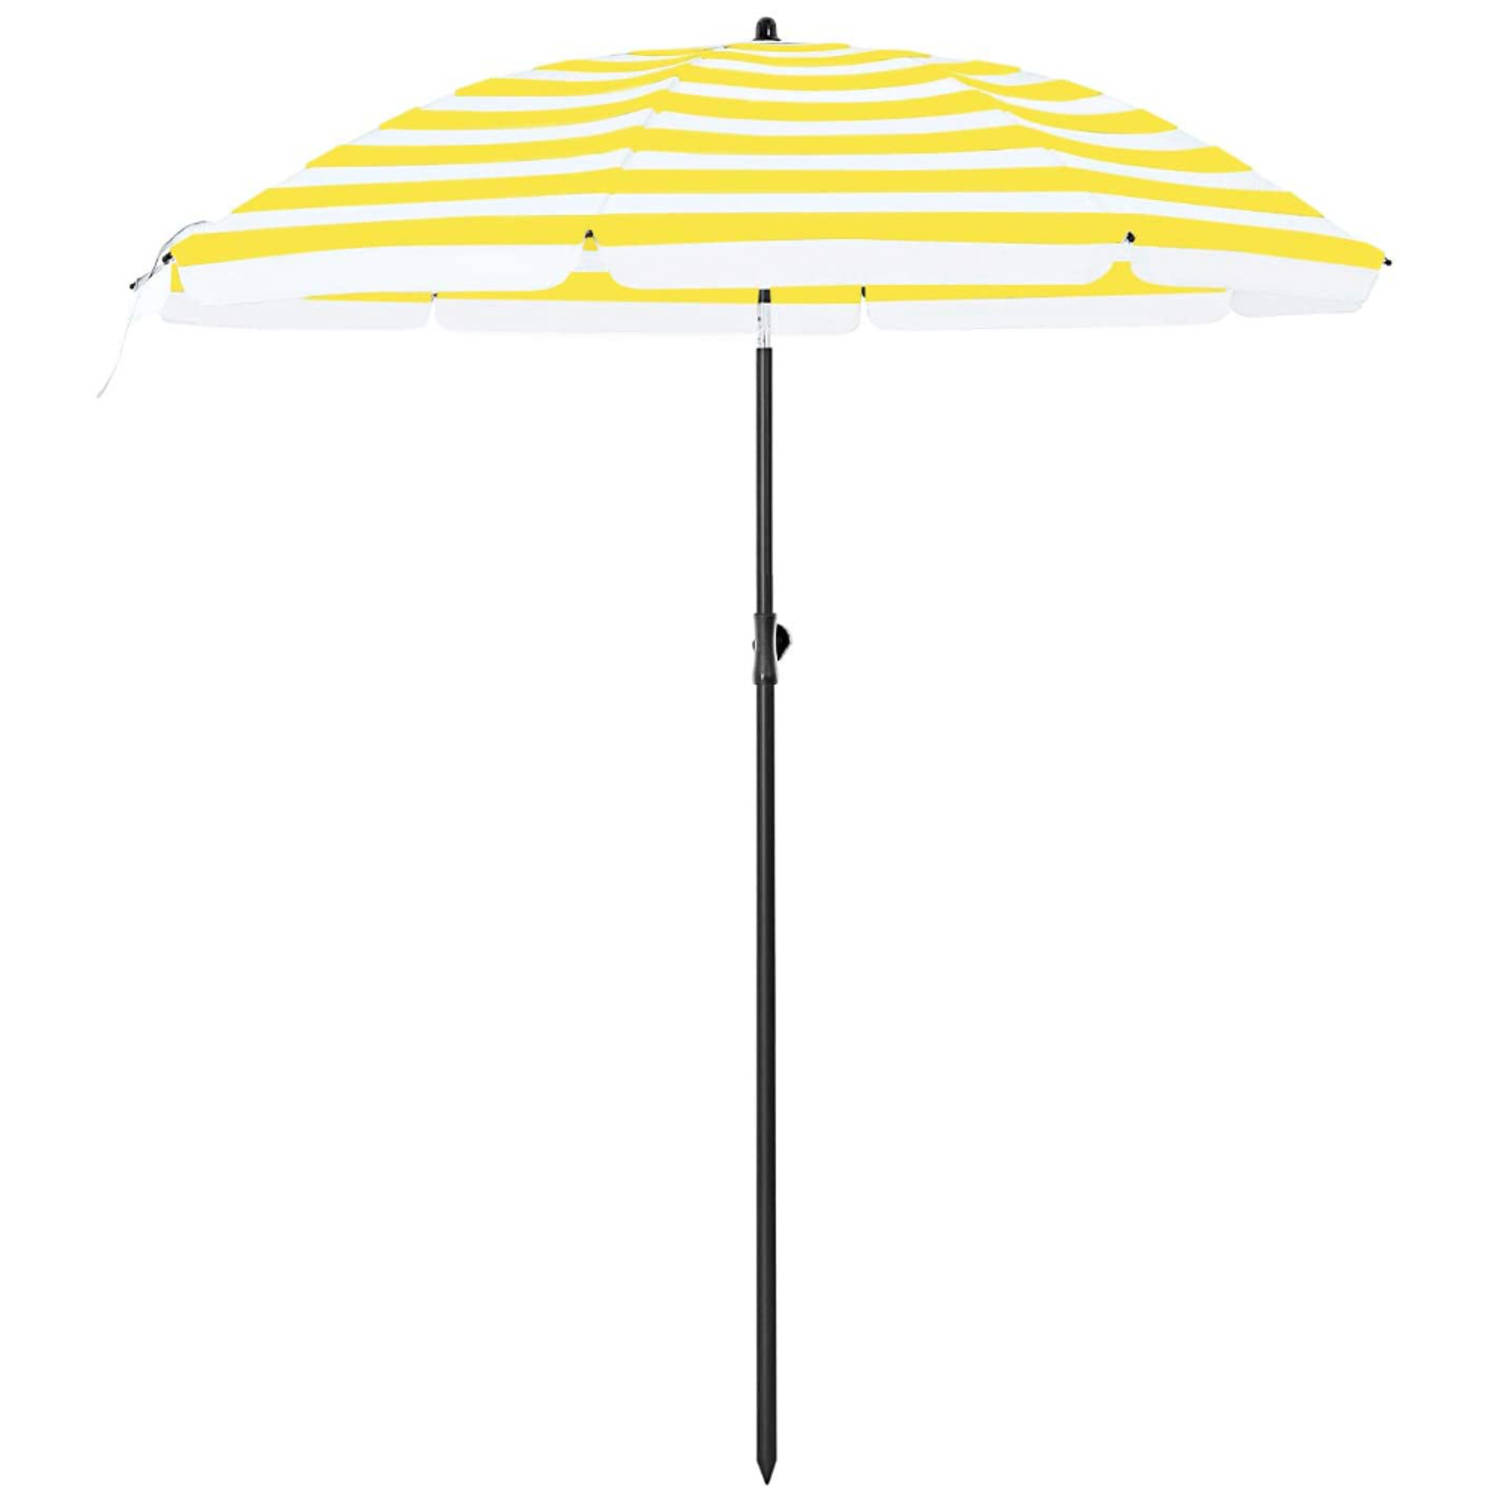 ACAZA Parasol 180 cm diameter, rond / achthoekige strandparasol, knikbaar, kantelbaar, met draagtas - gele strepen